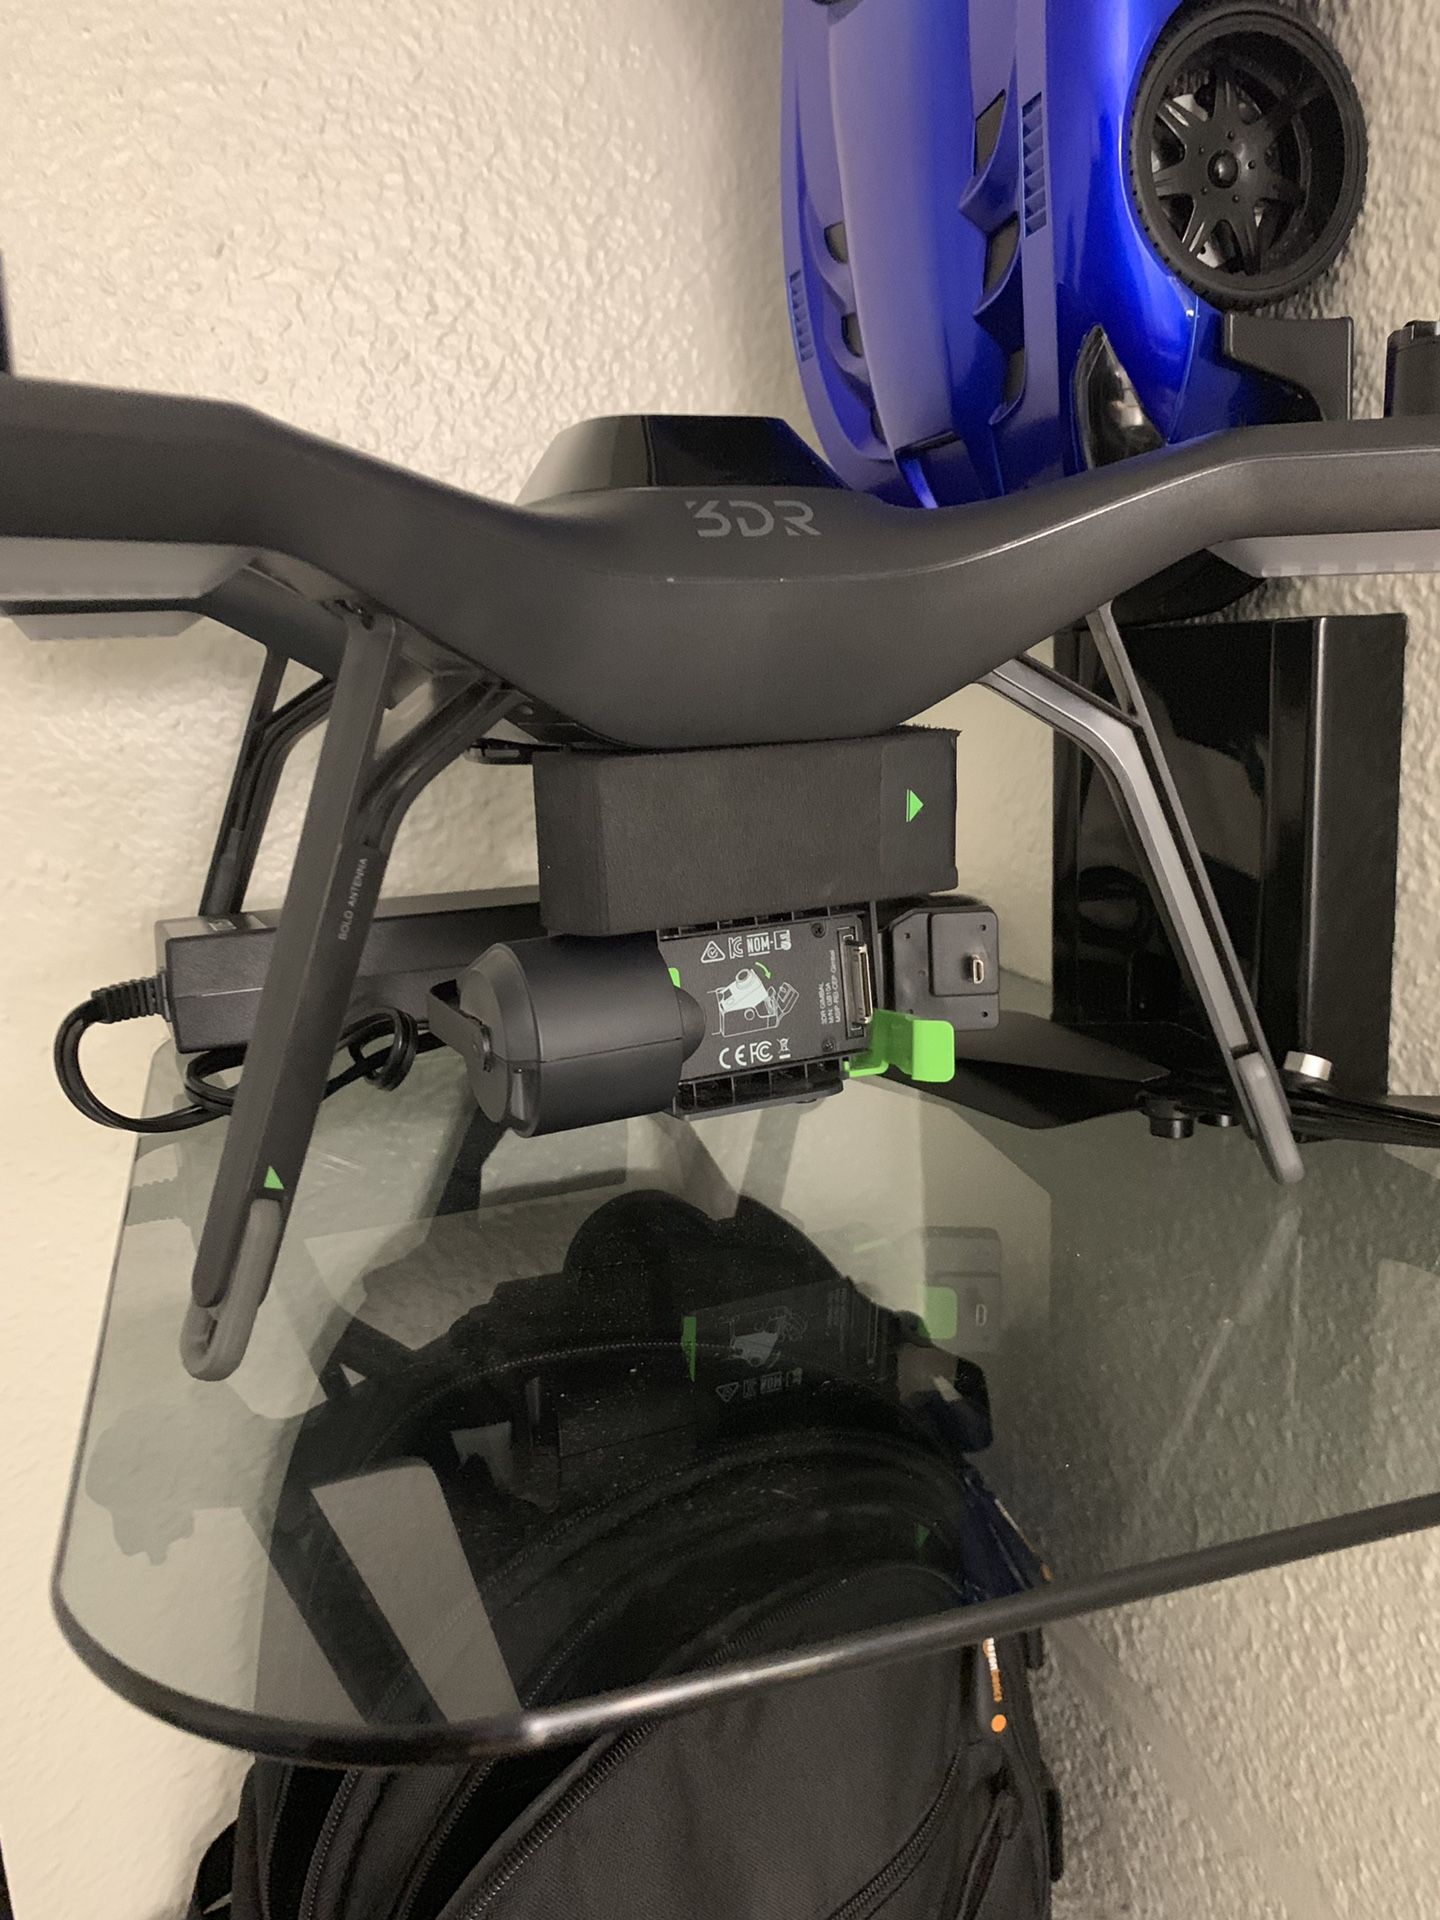 3DR Solo drone